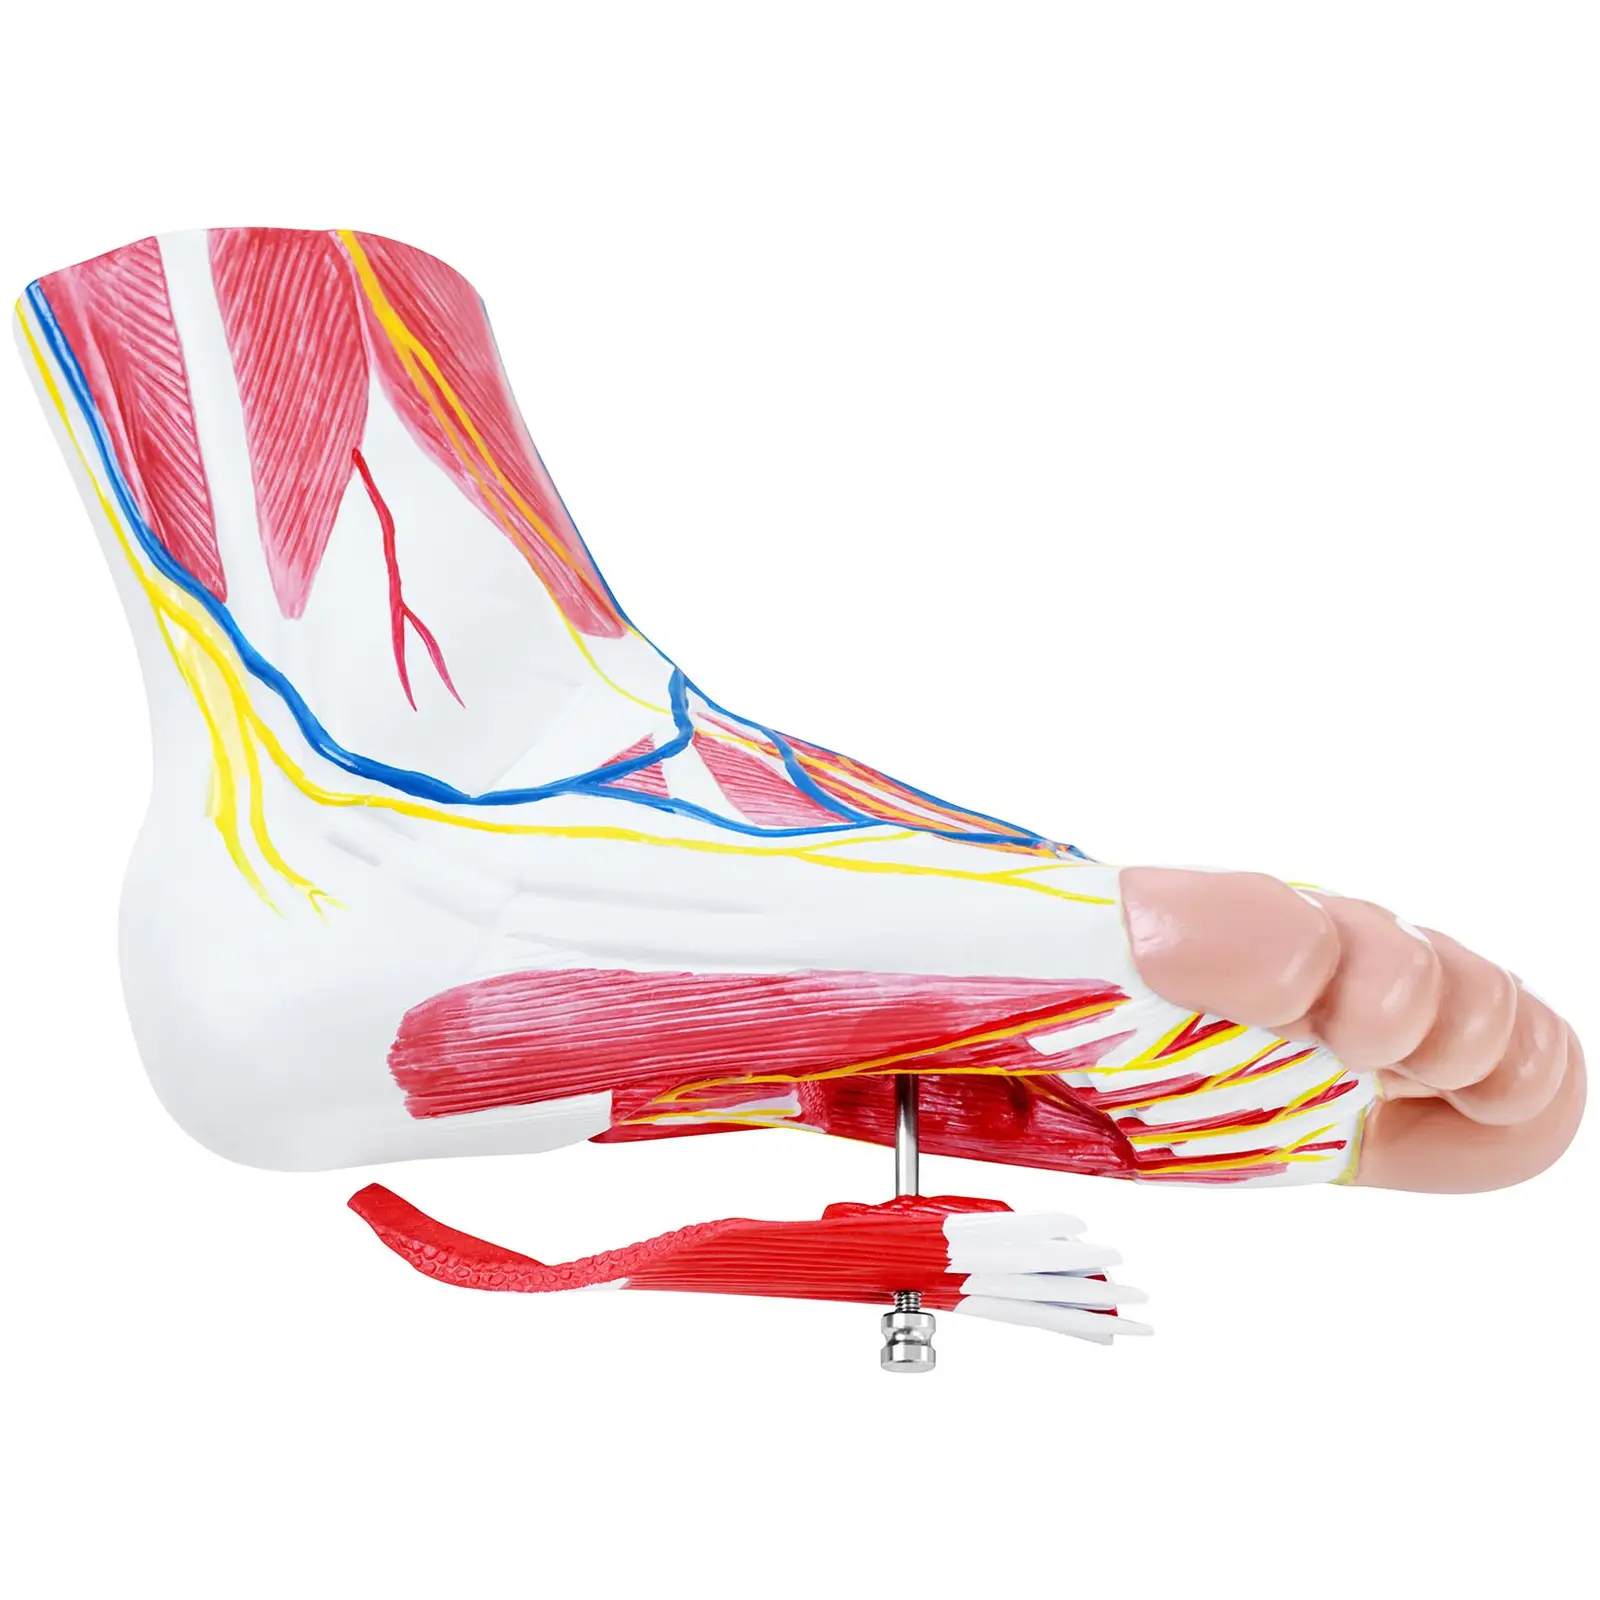 Modello anatomico del piede - Tre parti - Grandezza naturale - Degenerazione muscolare